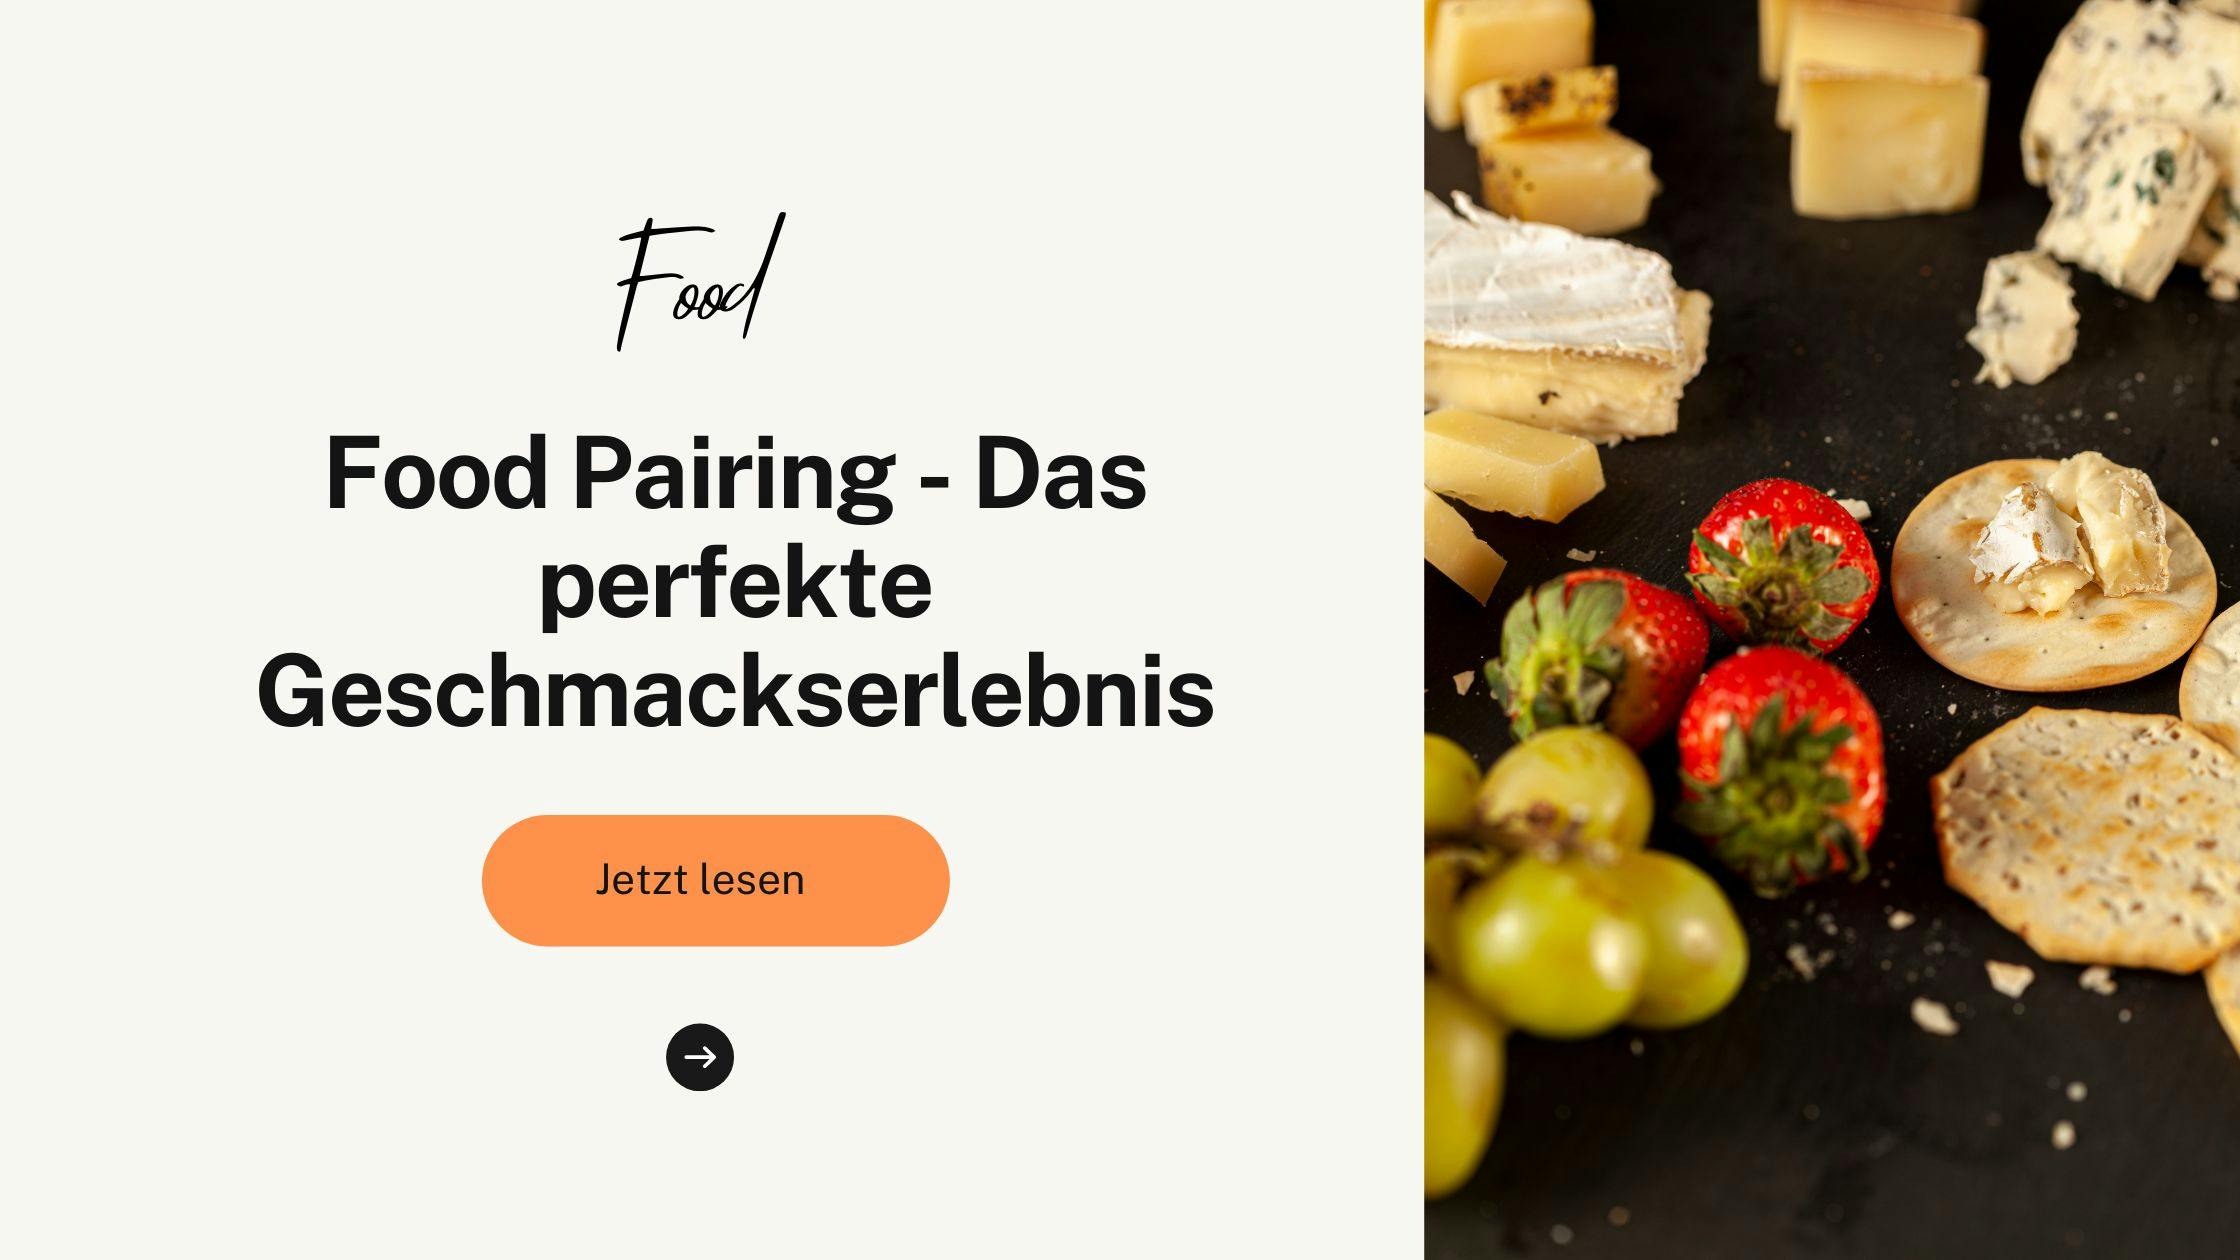 Food Pairing - Das perfekte Geschmackserlebnis